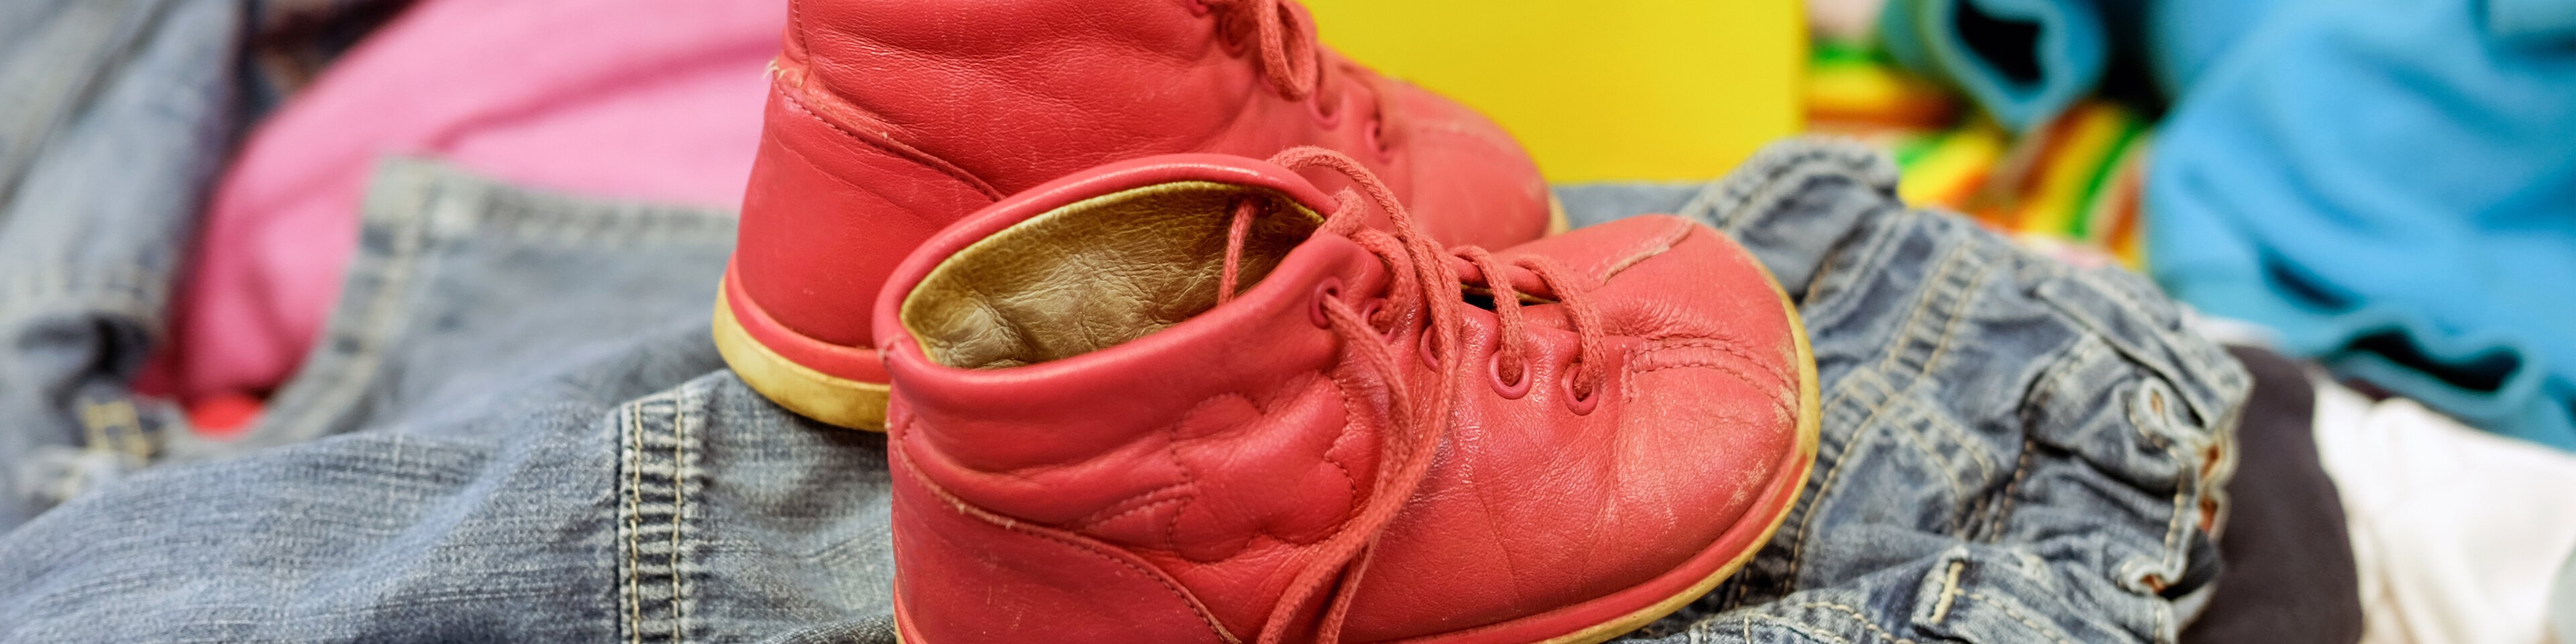 Gebrauchte Schuhe auf mehreren gebrauchten Klamotten | © Tittel 